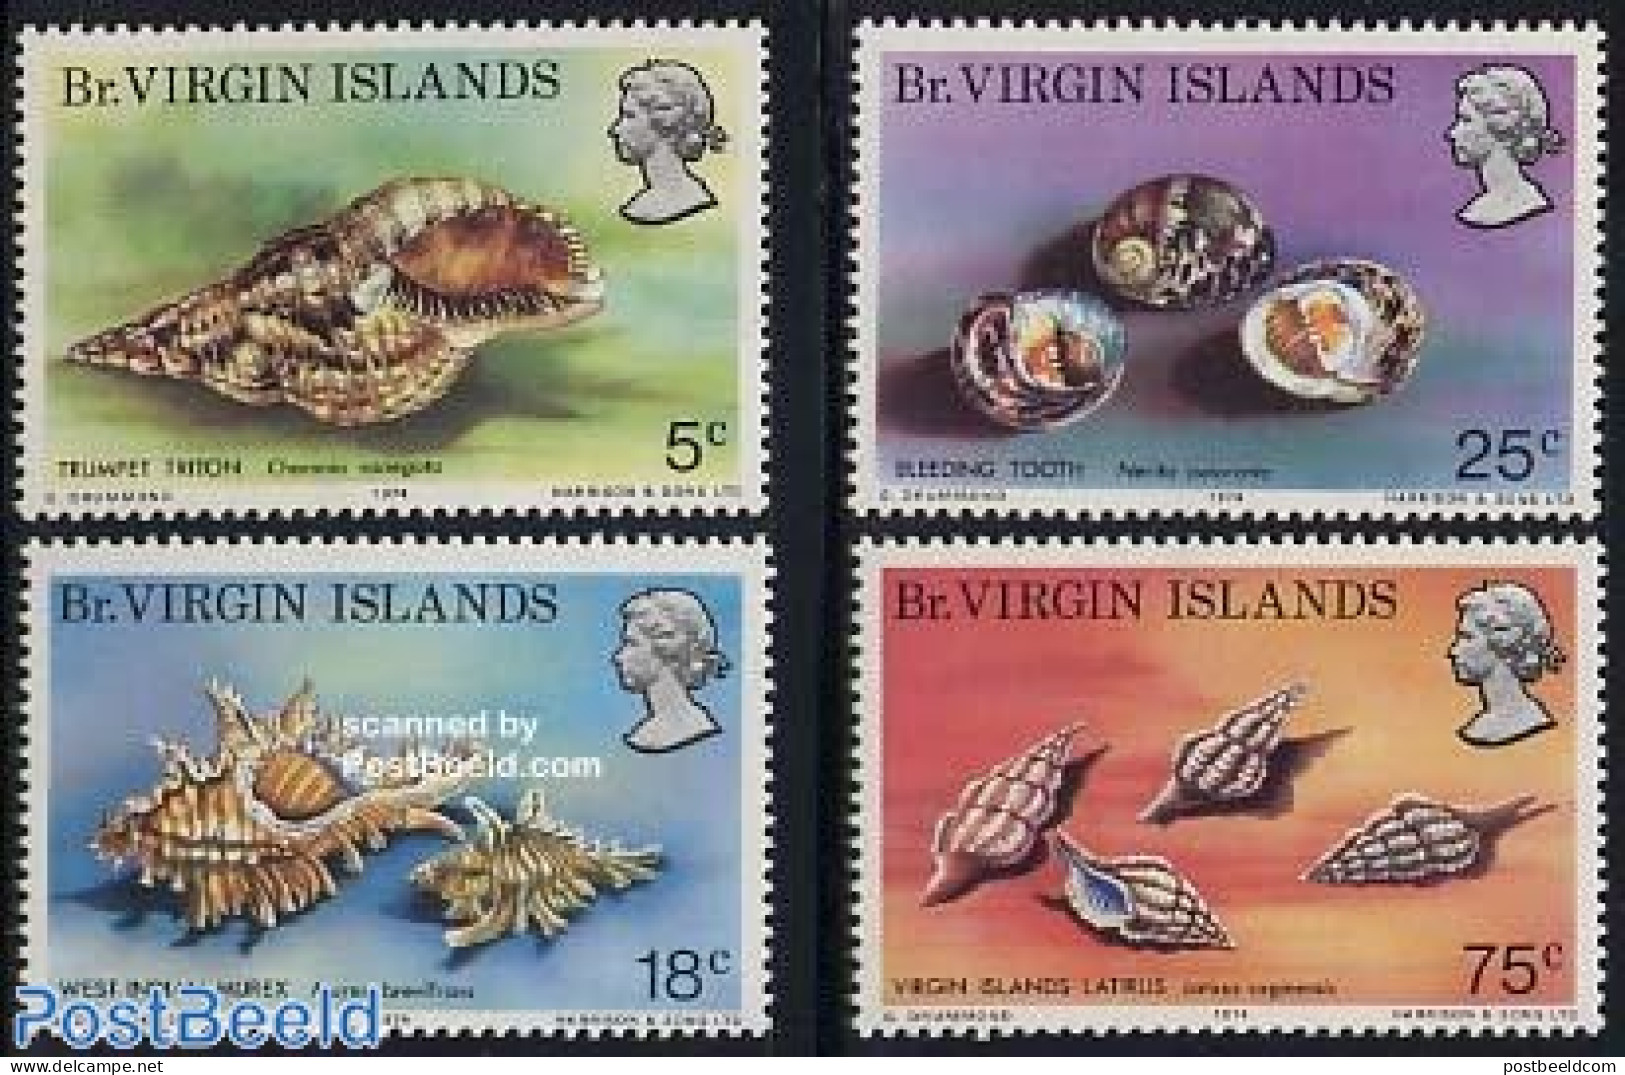 Virgin Islands 1974 Shells 4v, Mint NH, Nature - Shells & Crustaceans - Mundo Aquatico